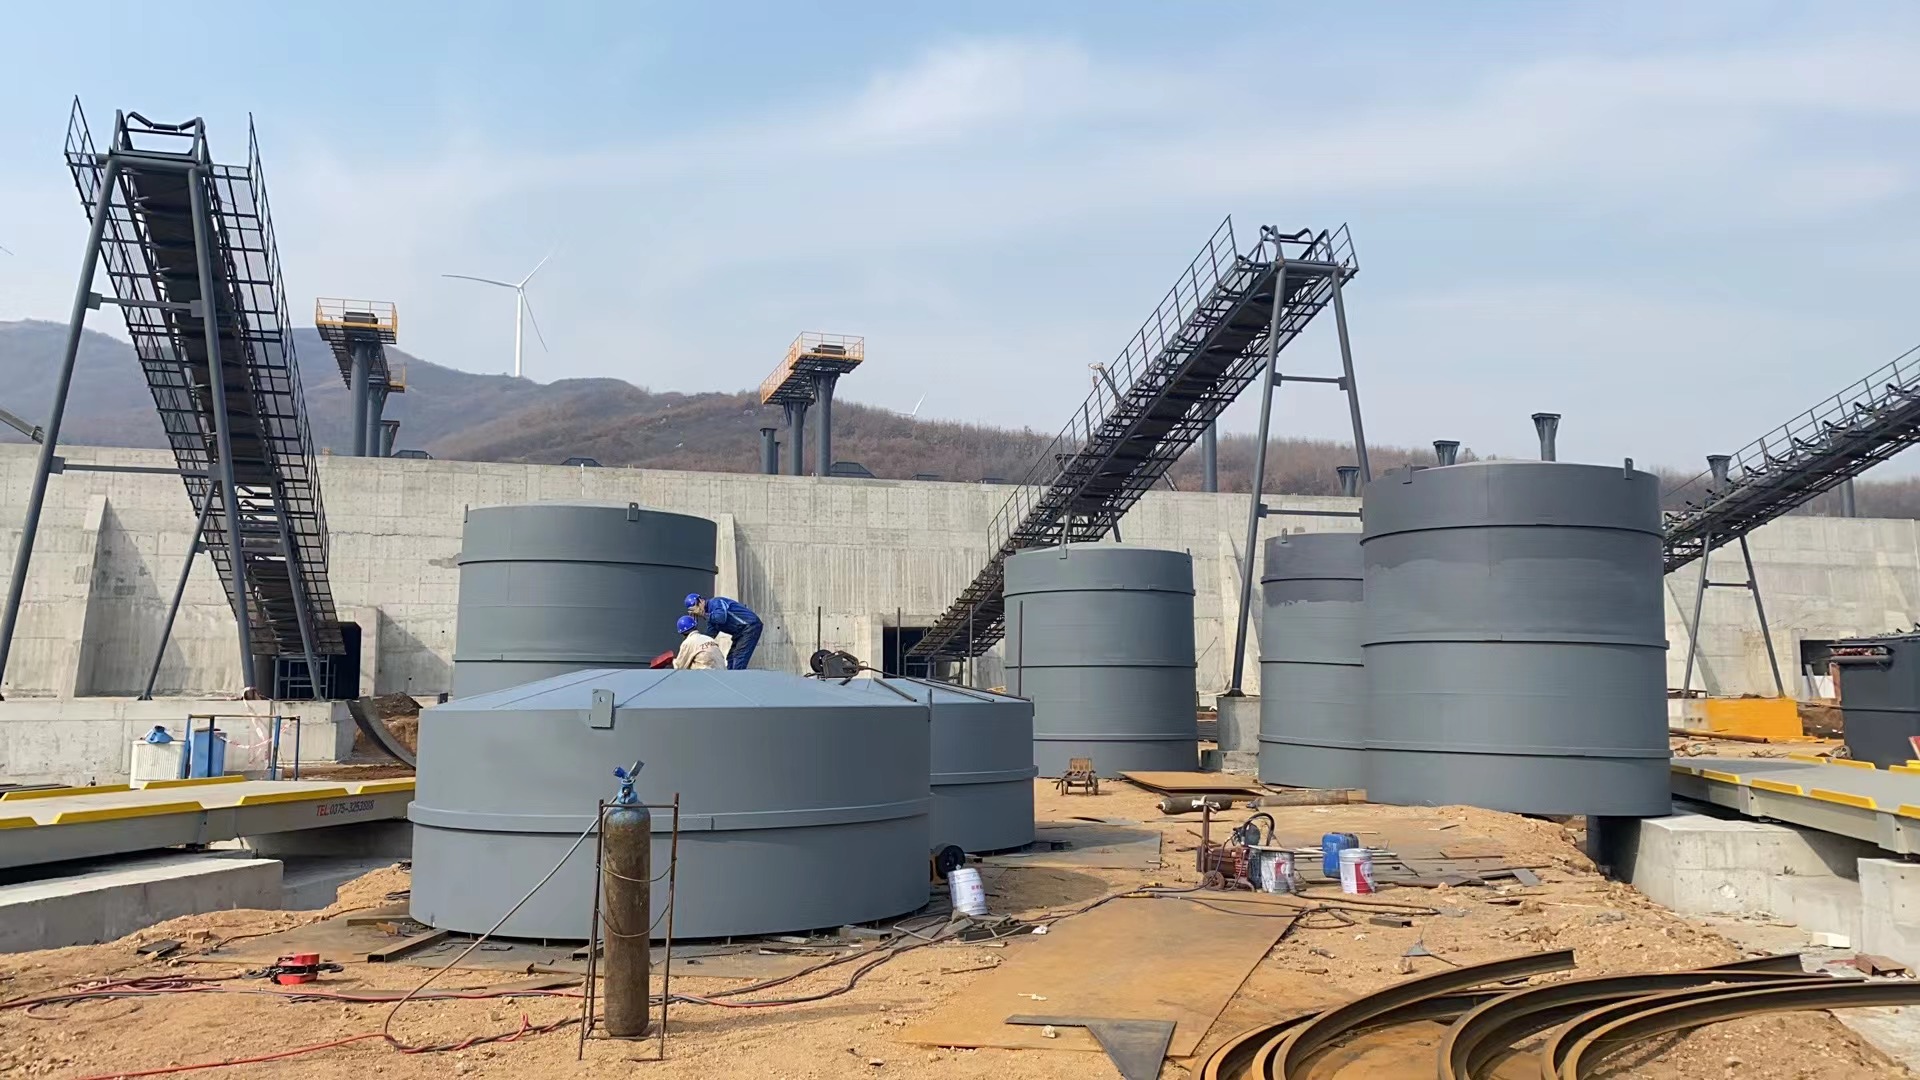 可克达拉骨料钢板仓河南项目大型骨料仓生产线进度